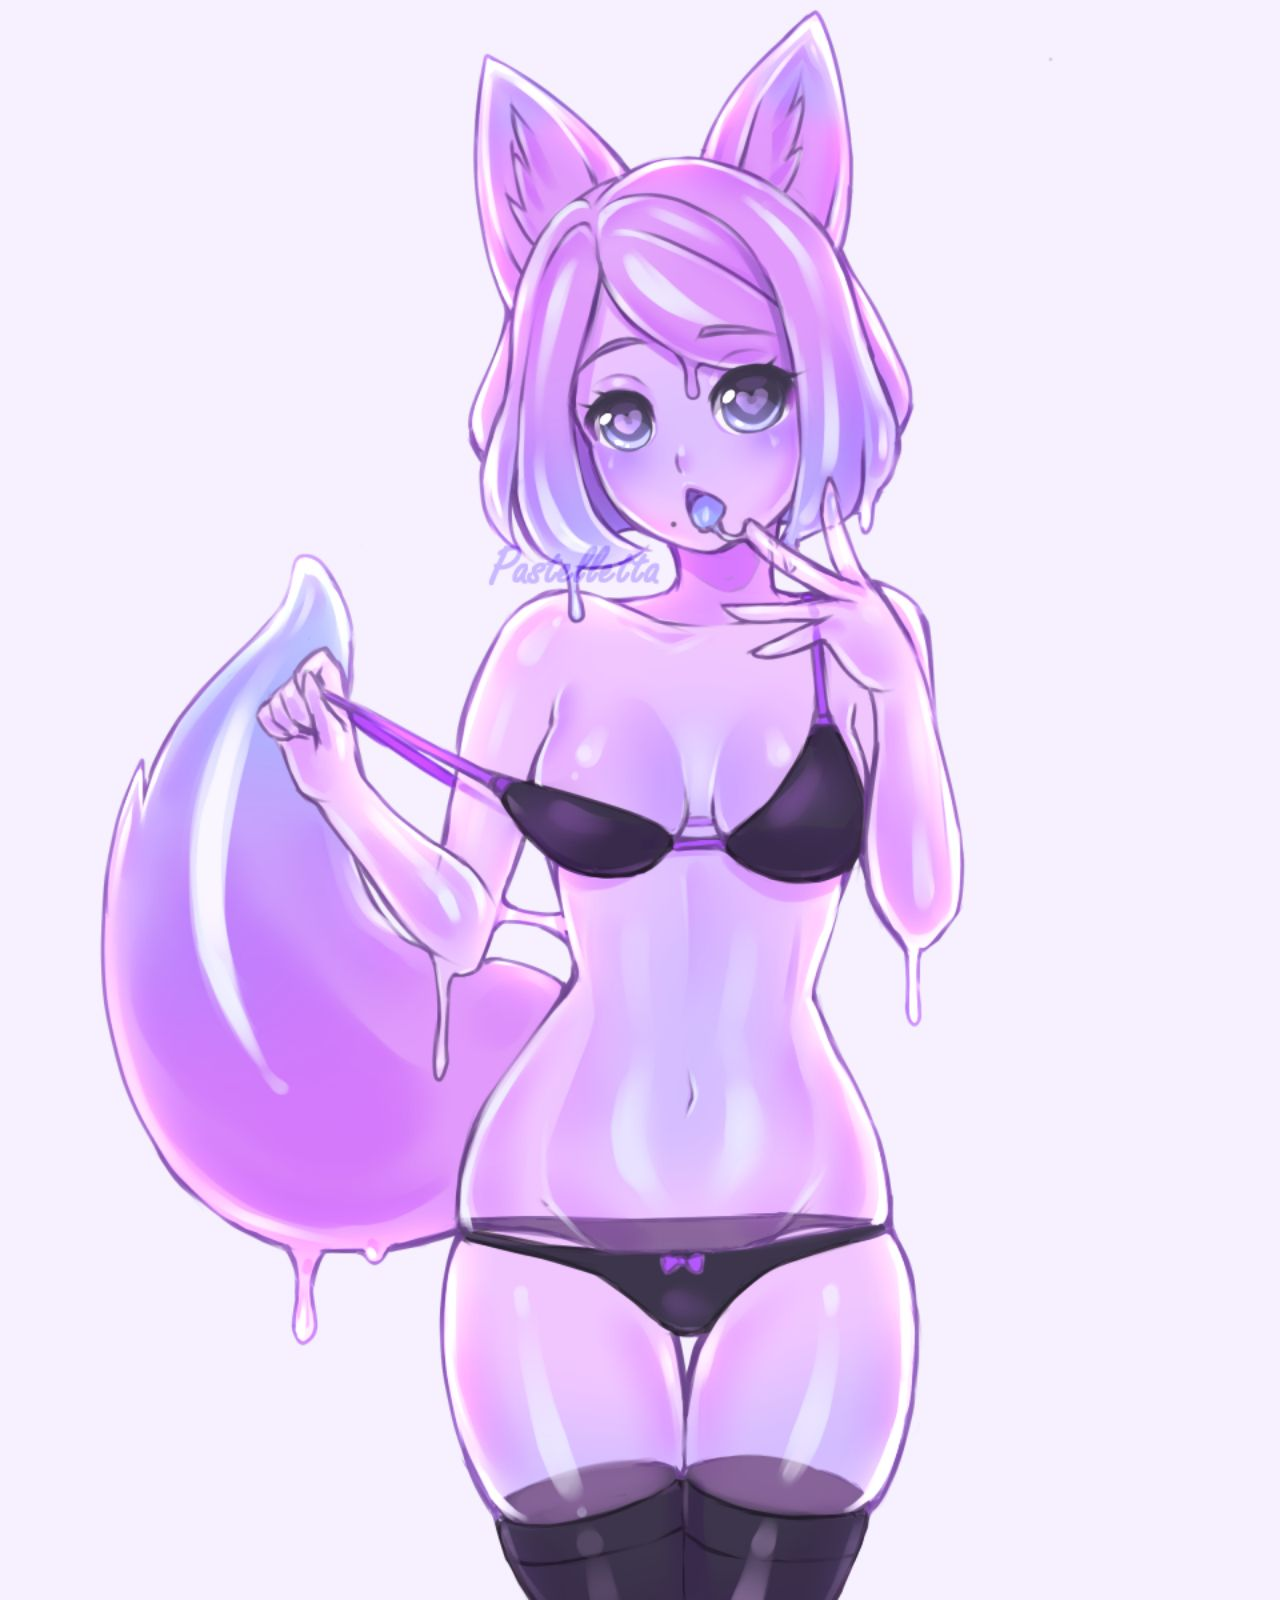 Cat slime or slime cat? - NSFW, Anime, Anime art, Original character, Monster girl, Slime, Animal ears, Underwear, Stockings, Pantsu, Neko